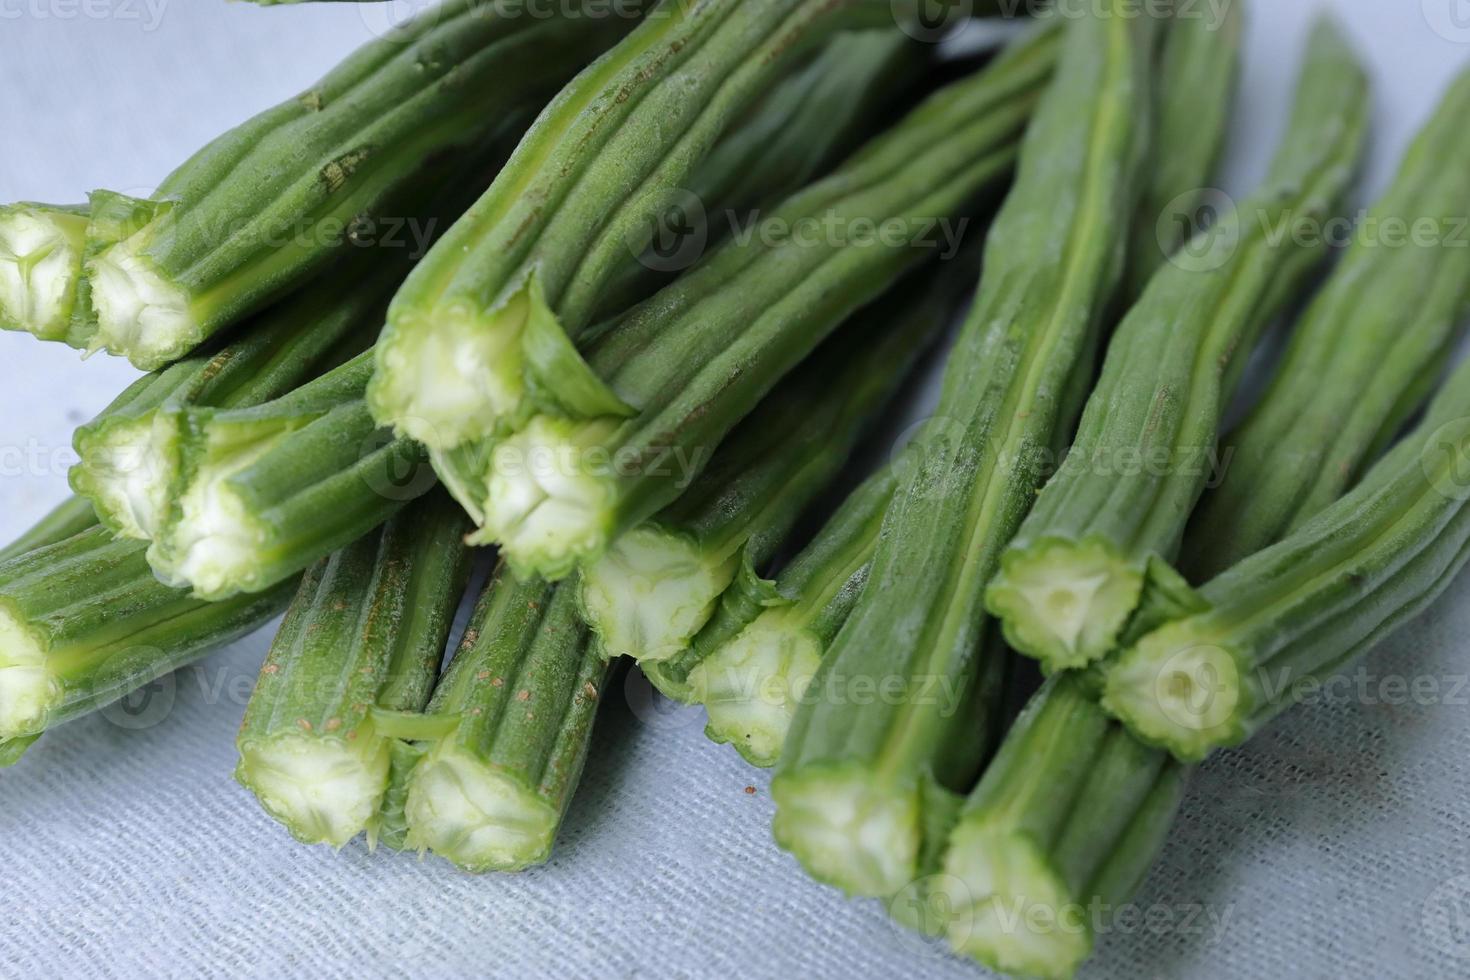 coxinha de legumes ou moringa em exposição em fundo branco foto